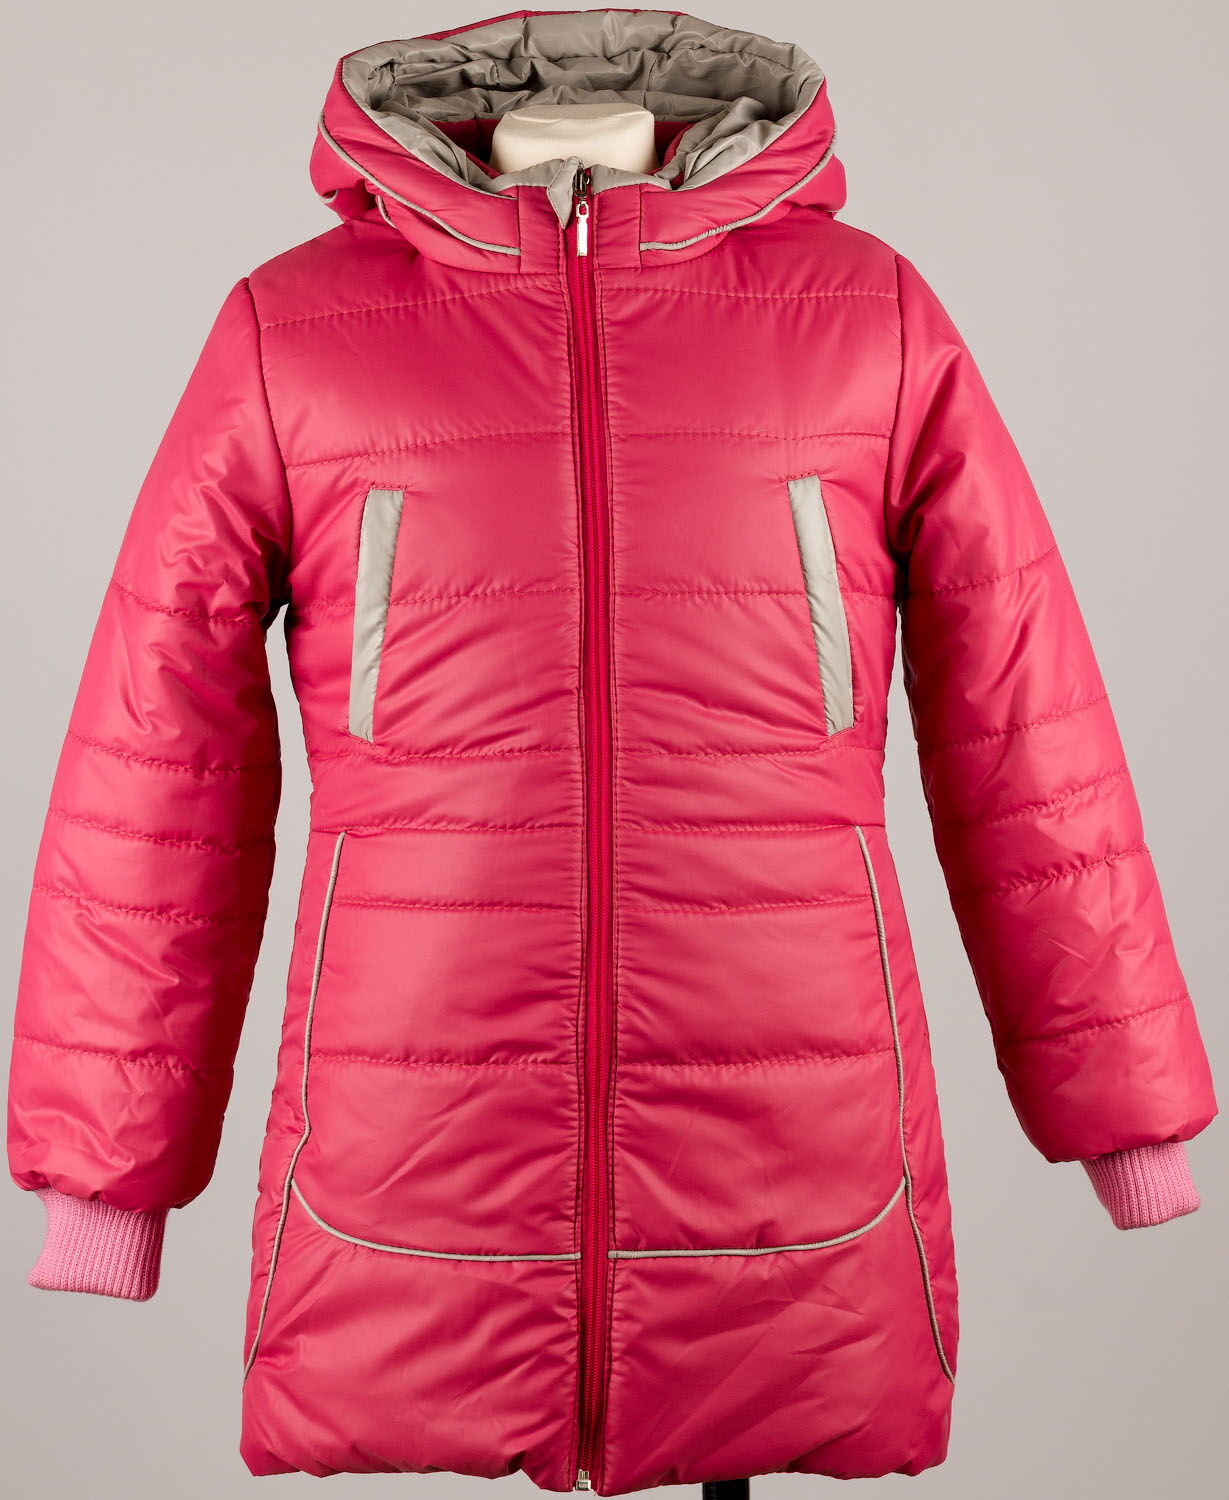 Куртка удлиненная для девочки Одягайко розовая 2513 - размеры